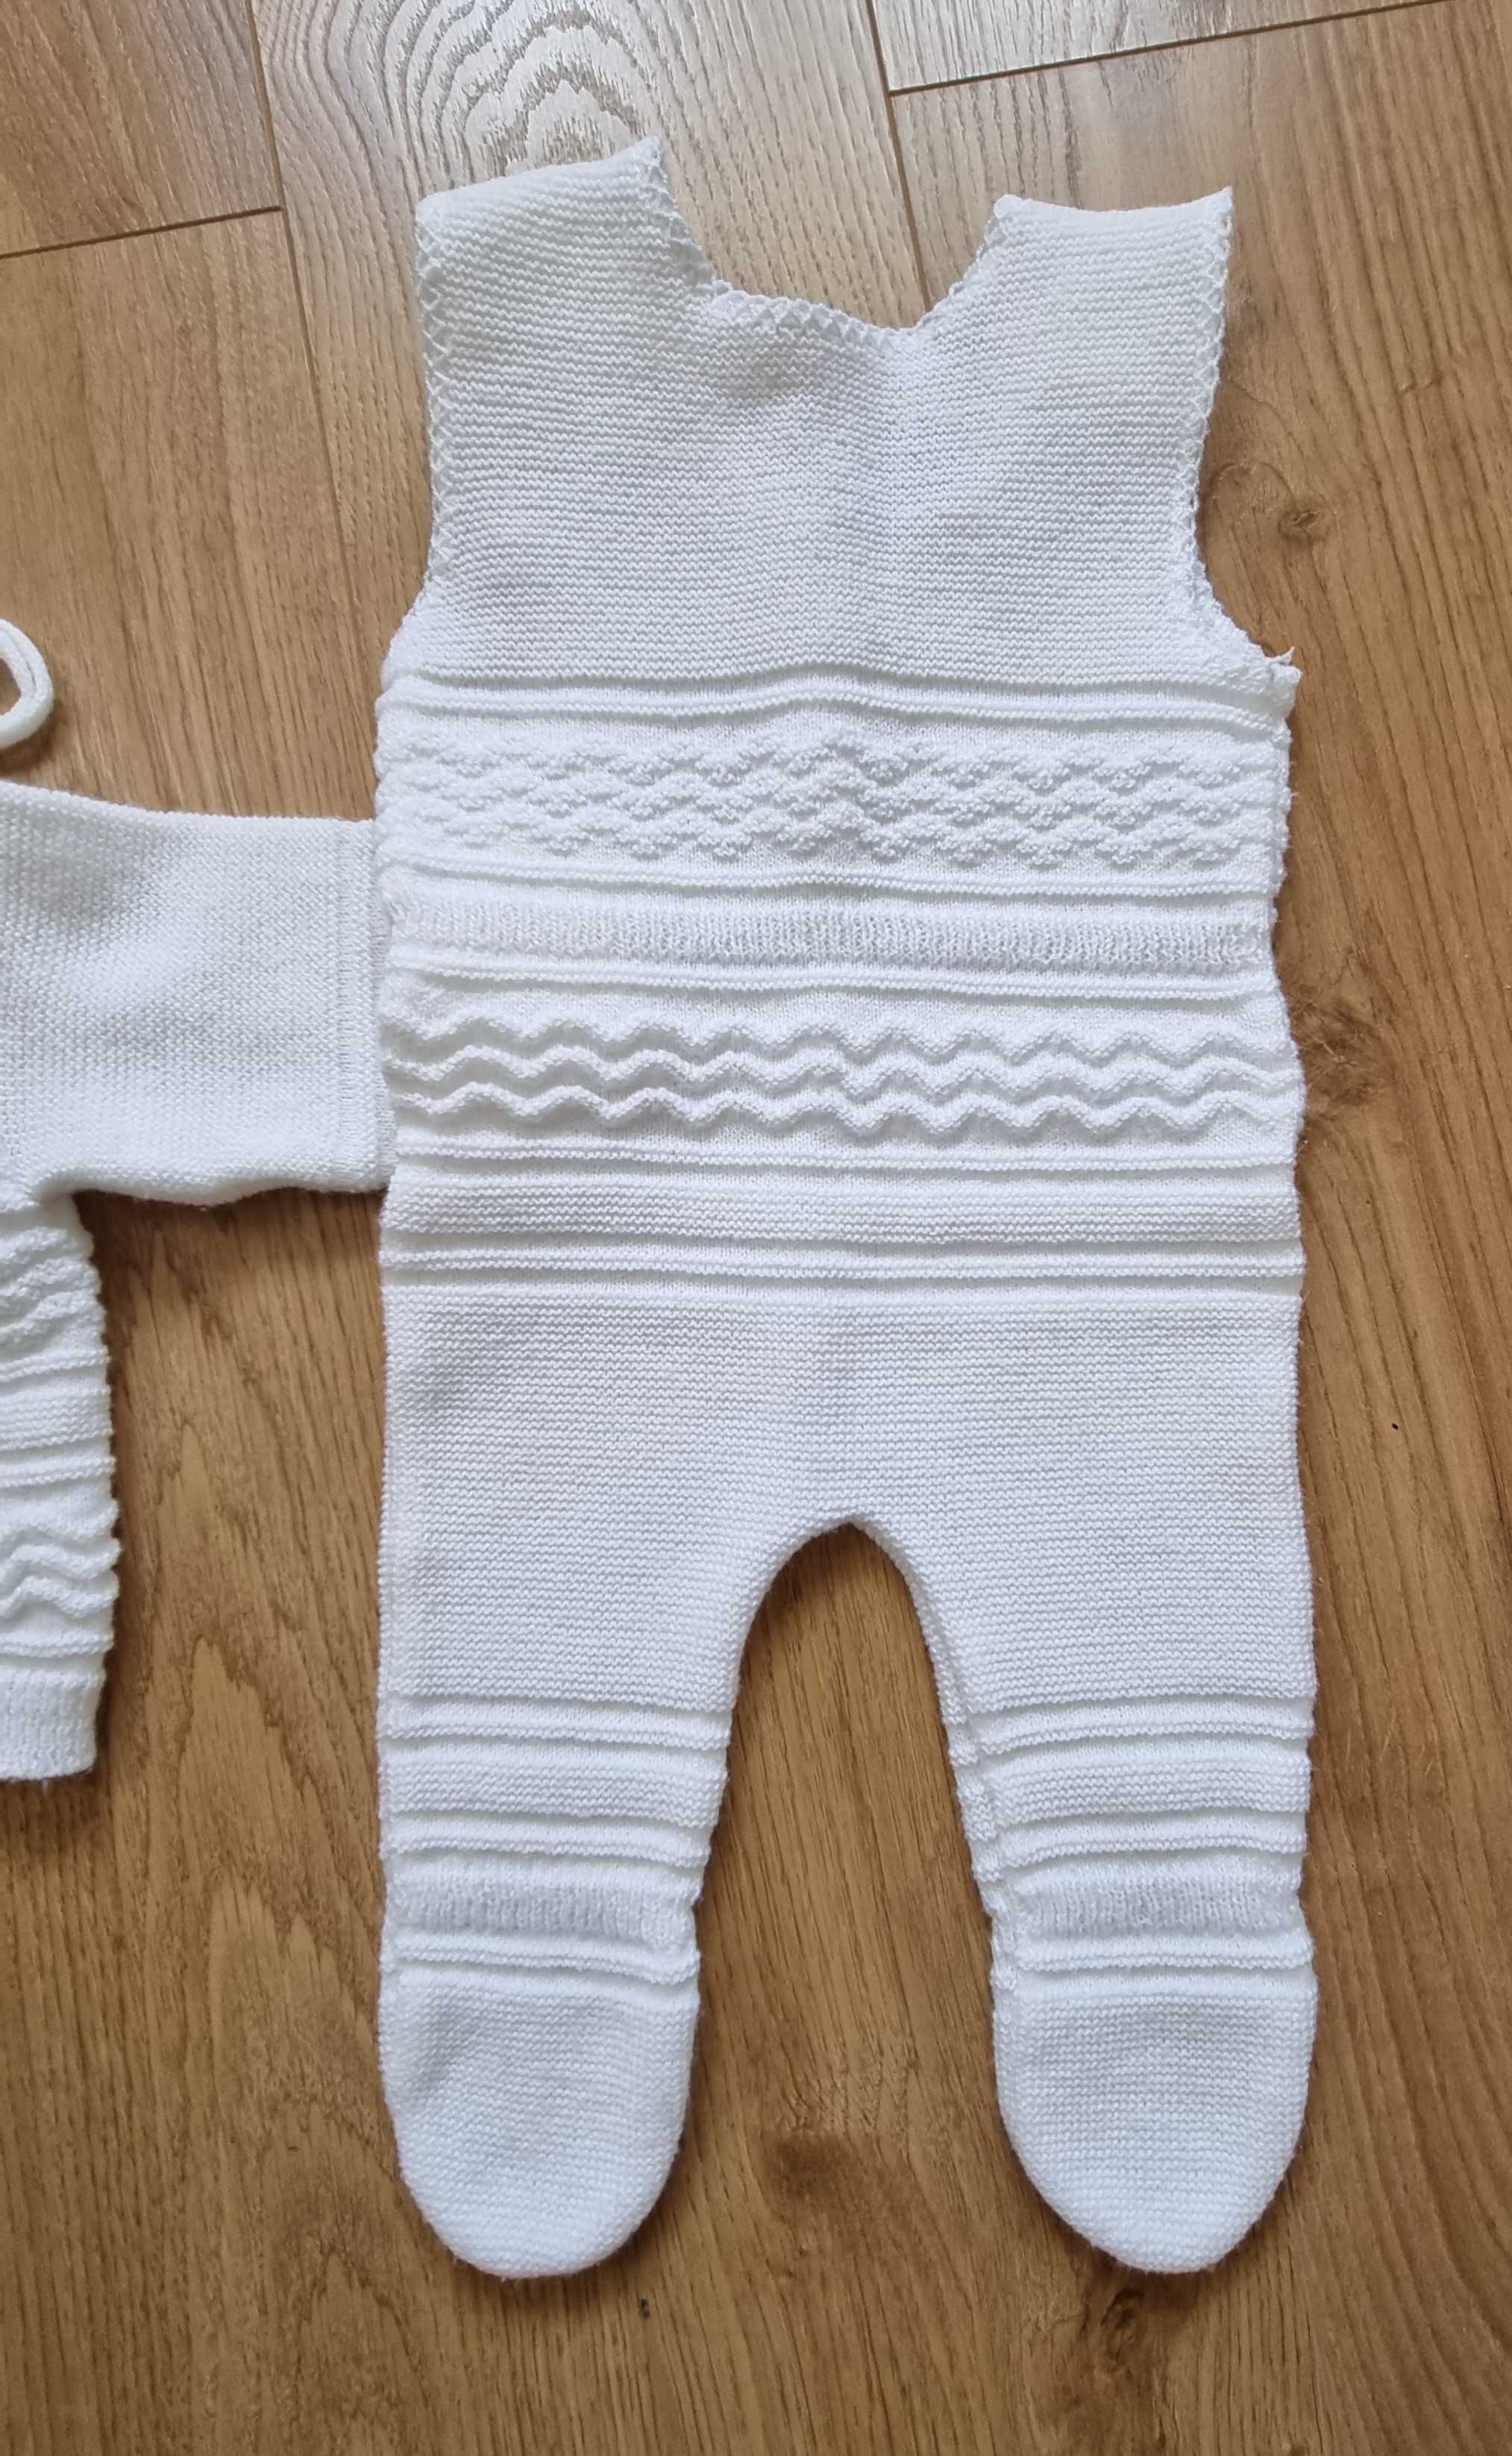 Zestaw dla dziecka sweterek pajac czapeczka biały 62